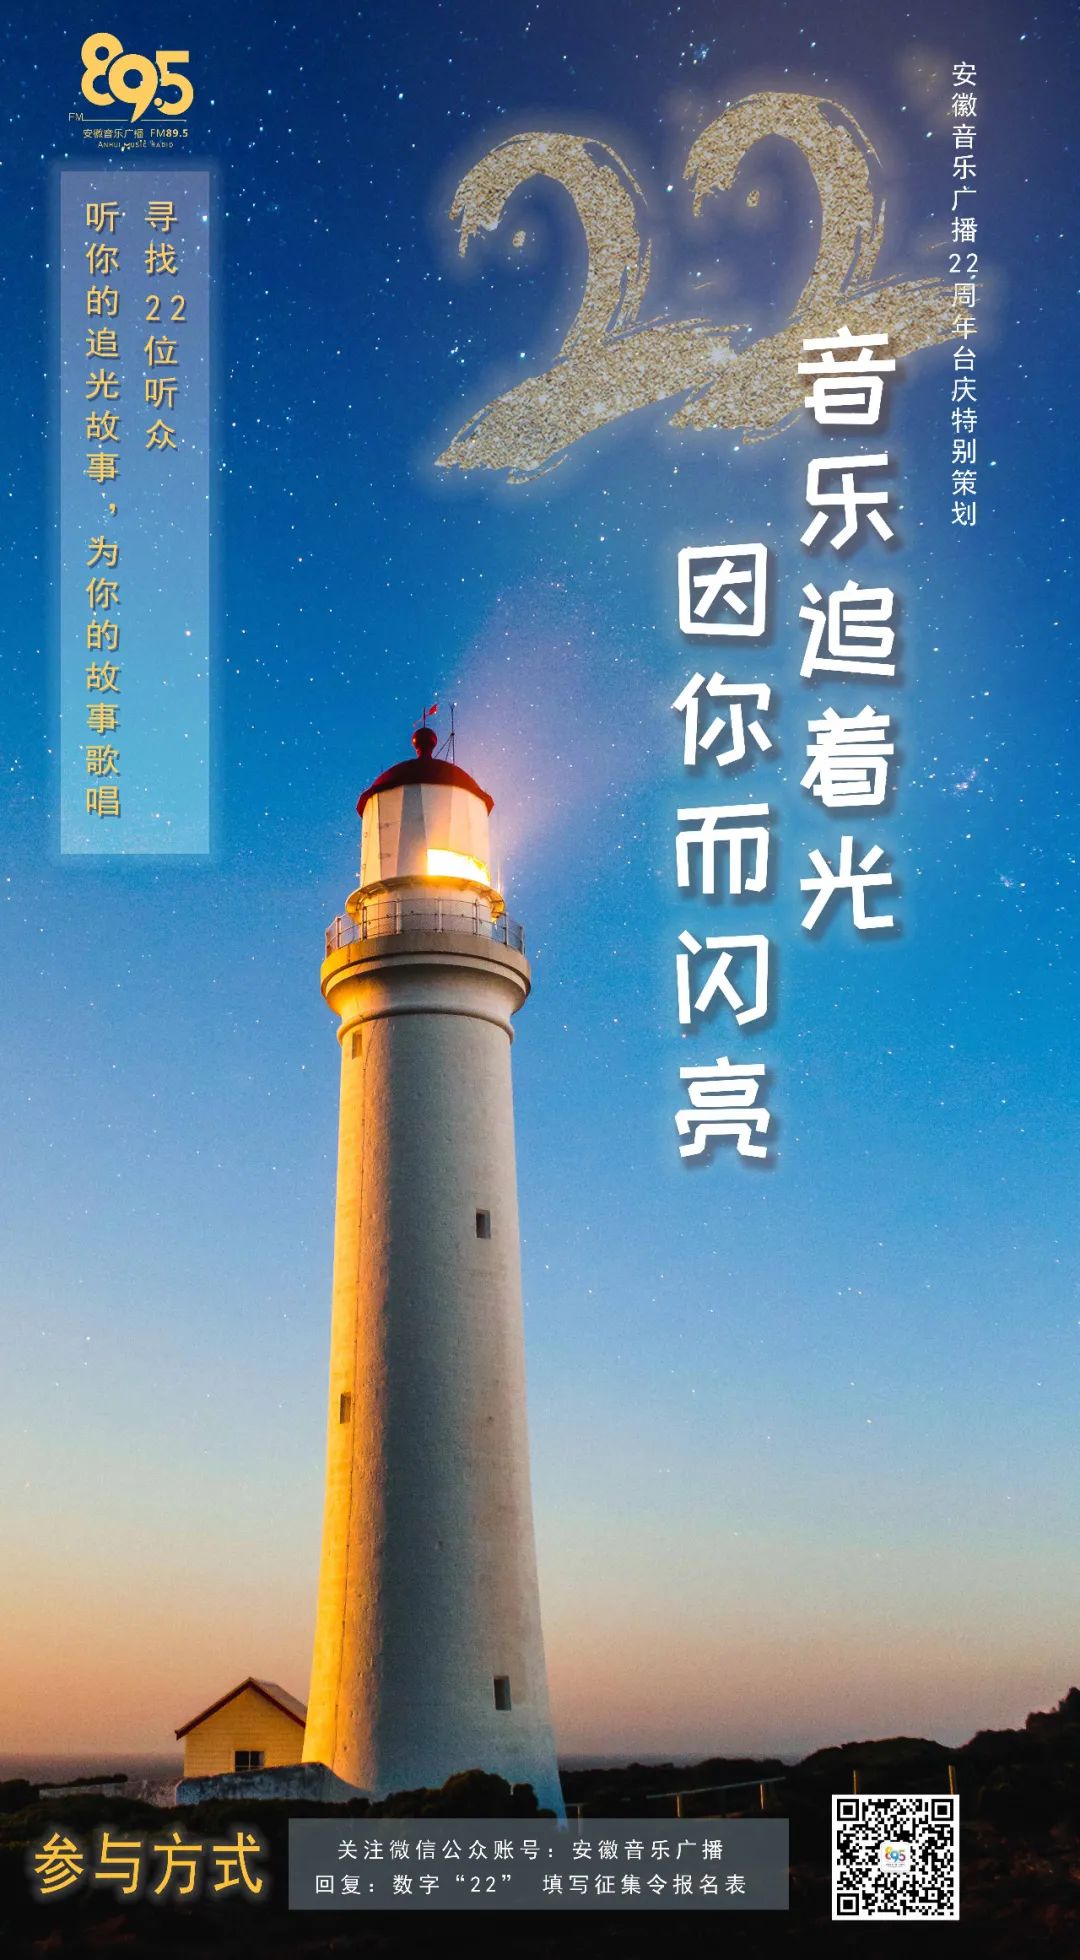 《憐憫──以耶穌的眼光來待人》書介 真實的憐憫 | 台灣教會公報新聞網